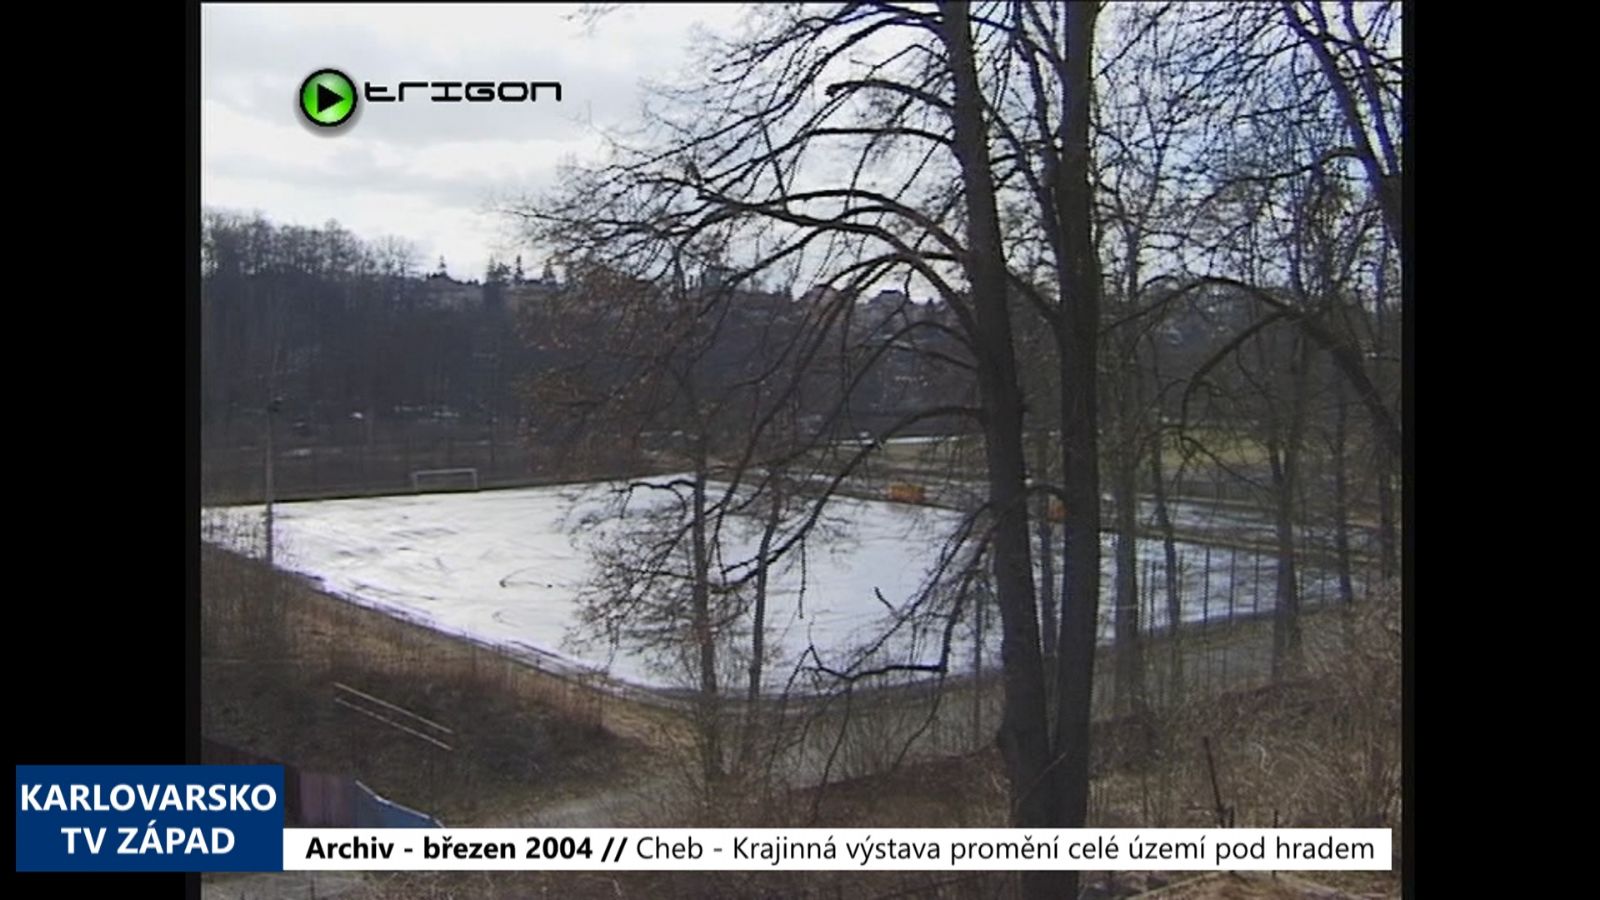 2004 – Cheb: Krajinná výstava promění celé prostředí po hradem (TV Západ)